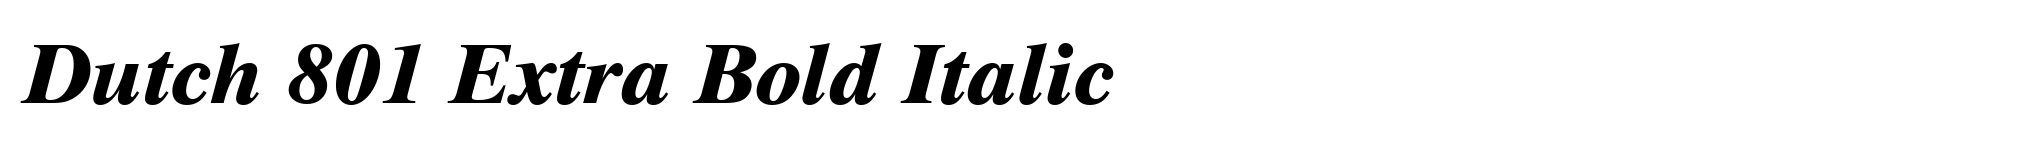 Dutch 801 Extra Bold Italic image